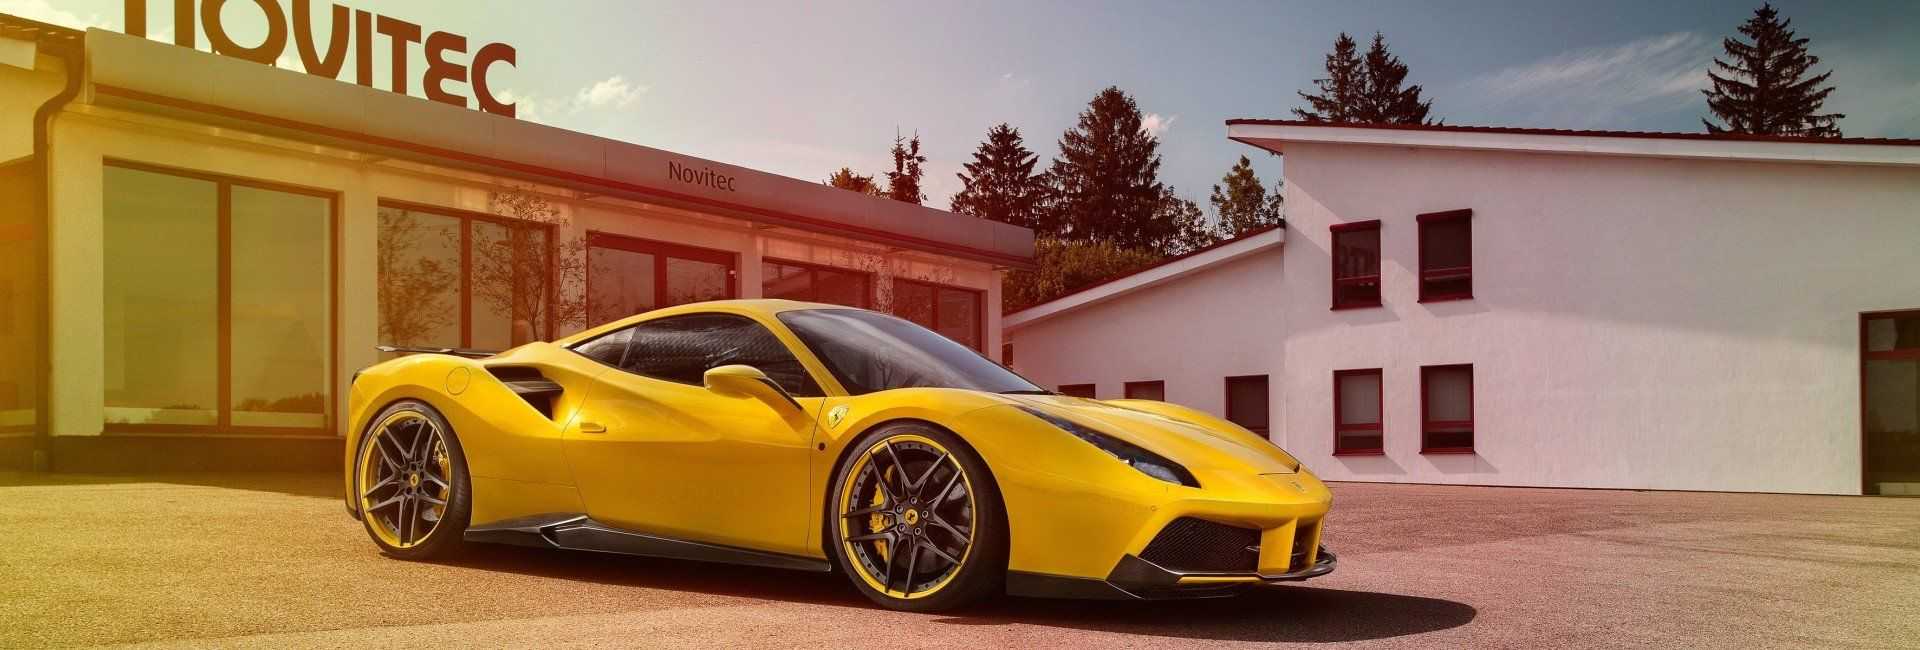 Немецкие тюнеры из ателье Novitec Rosso пополнили свое портфолио доработанным вариантом нового суперкара Ferrari FF, получившего несколько различных